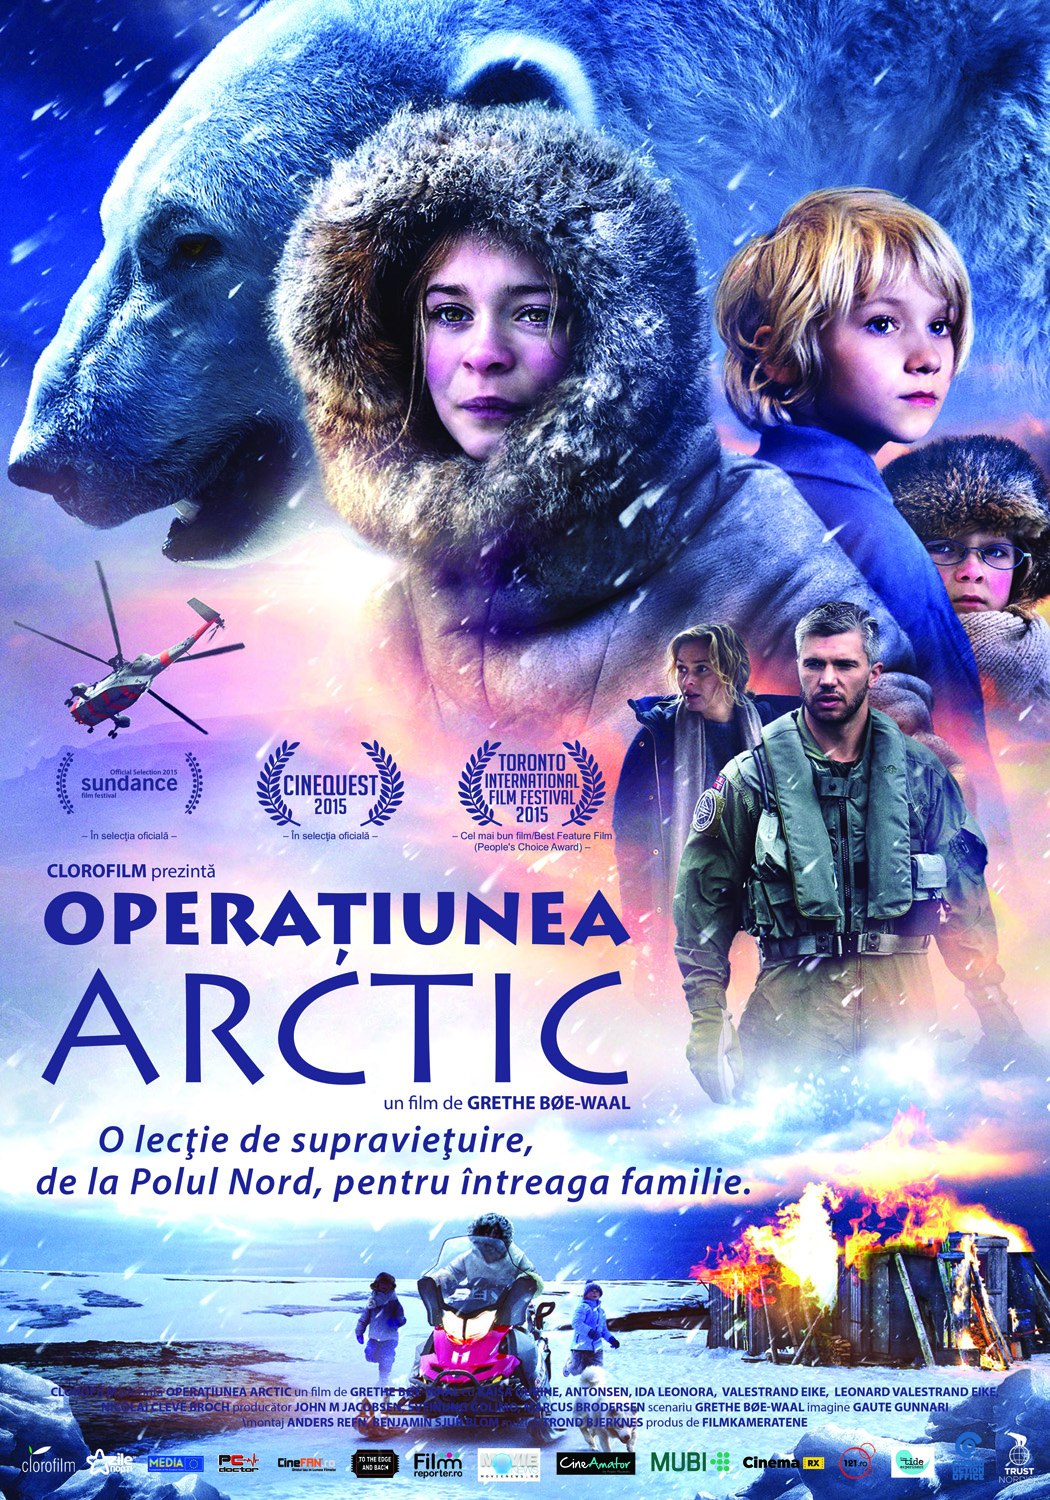 Operasjon Arktis